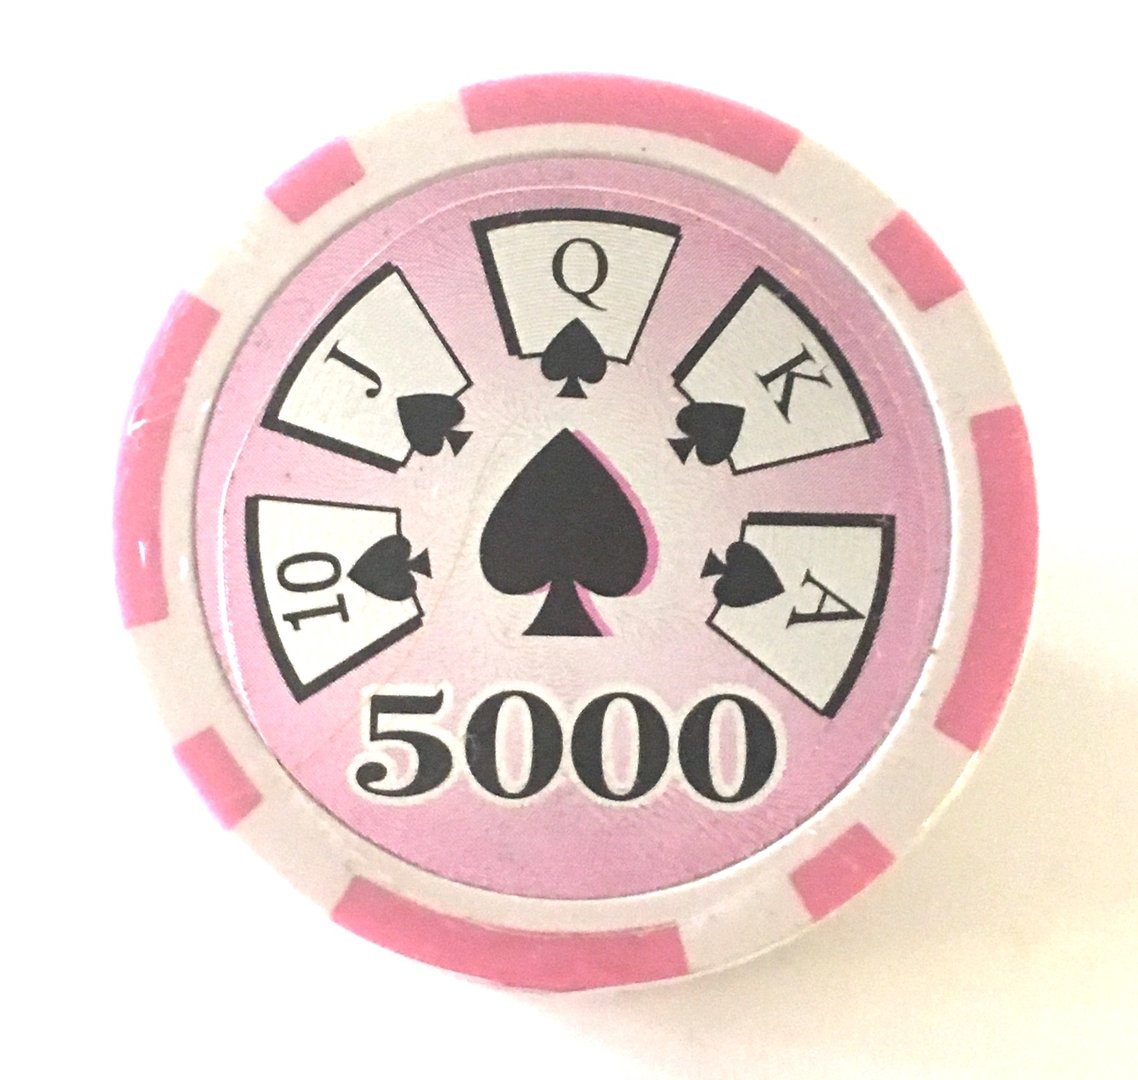 Purple 500 14 gram High Roller laser poker chips roll of 25